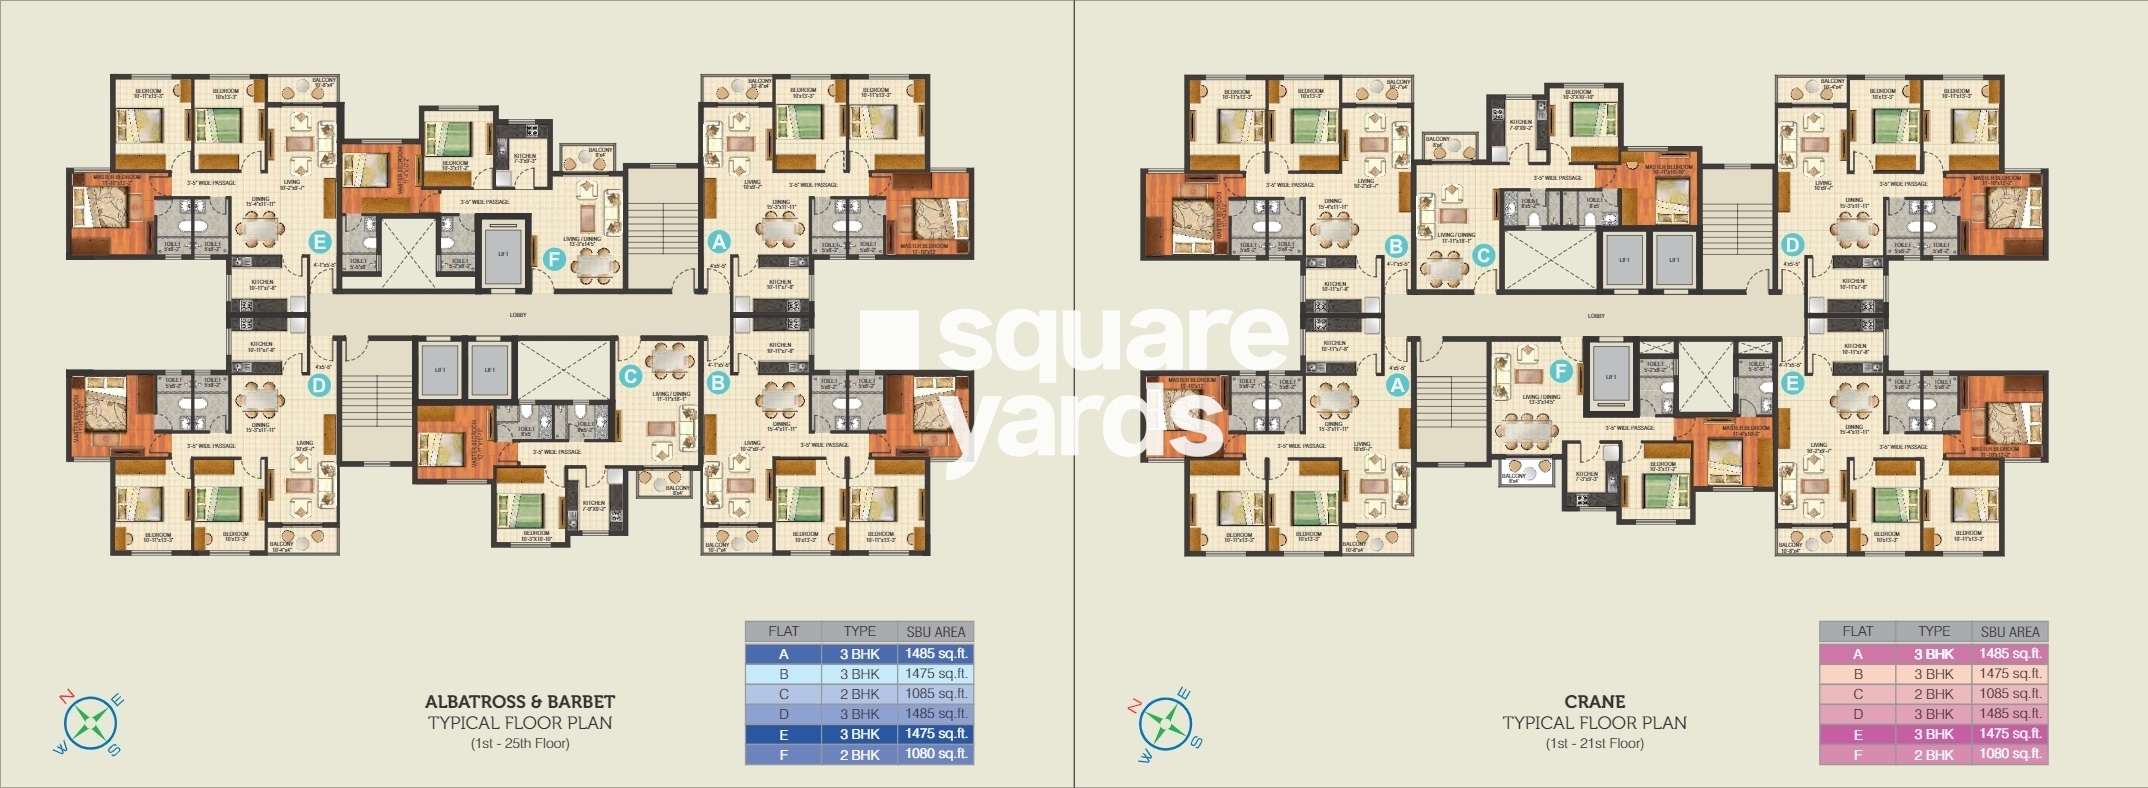 ideal aquaview project floor plans1 5738